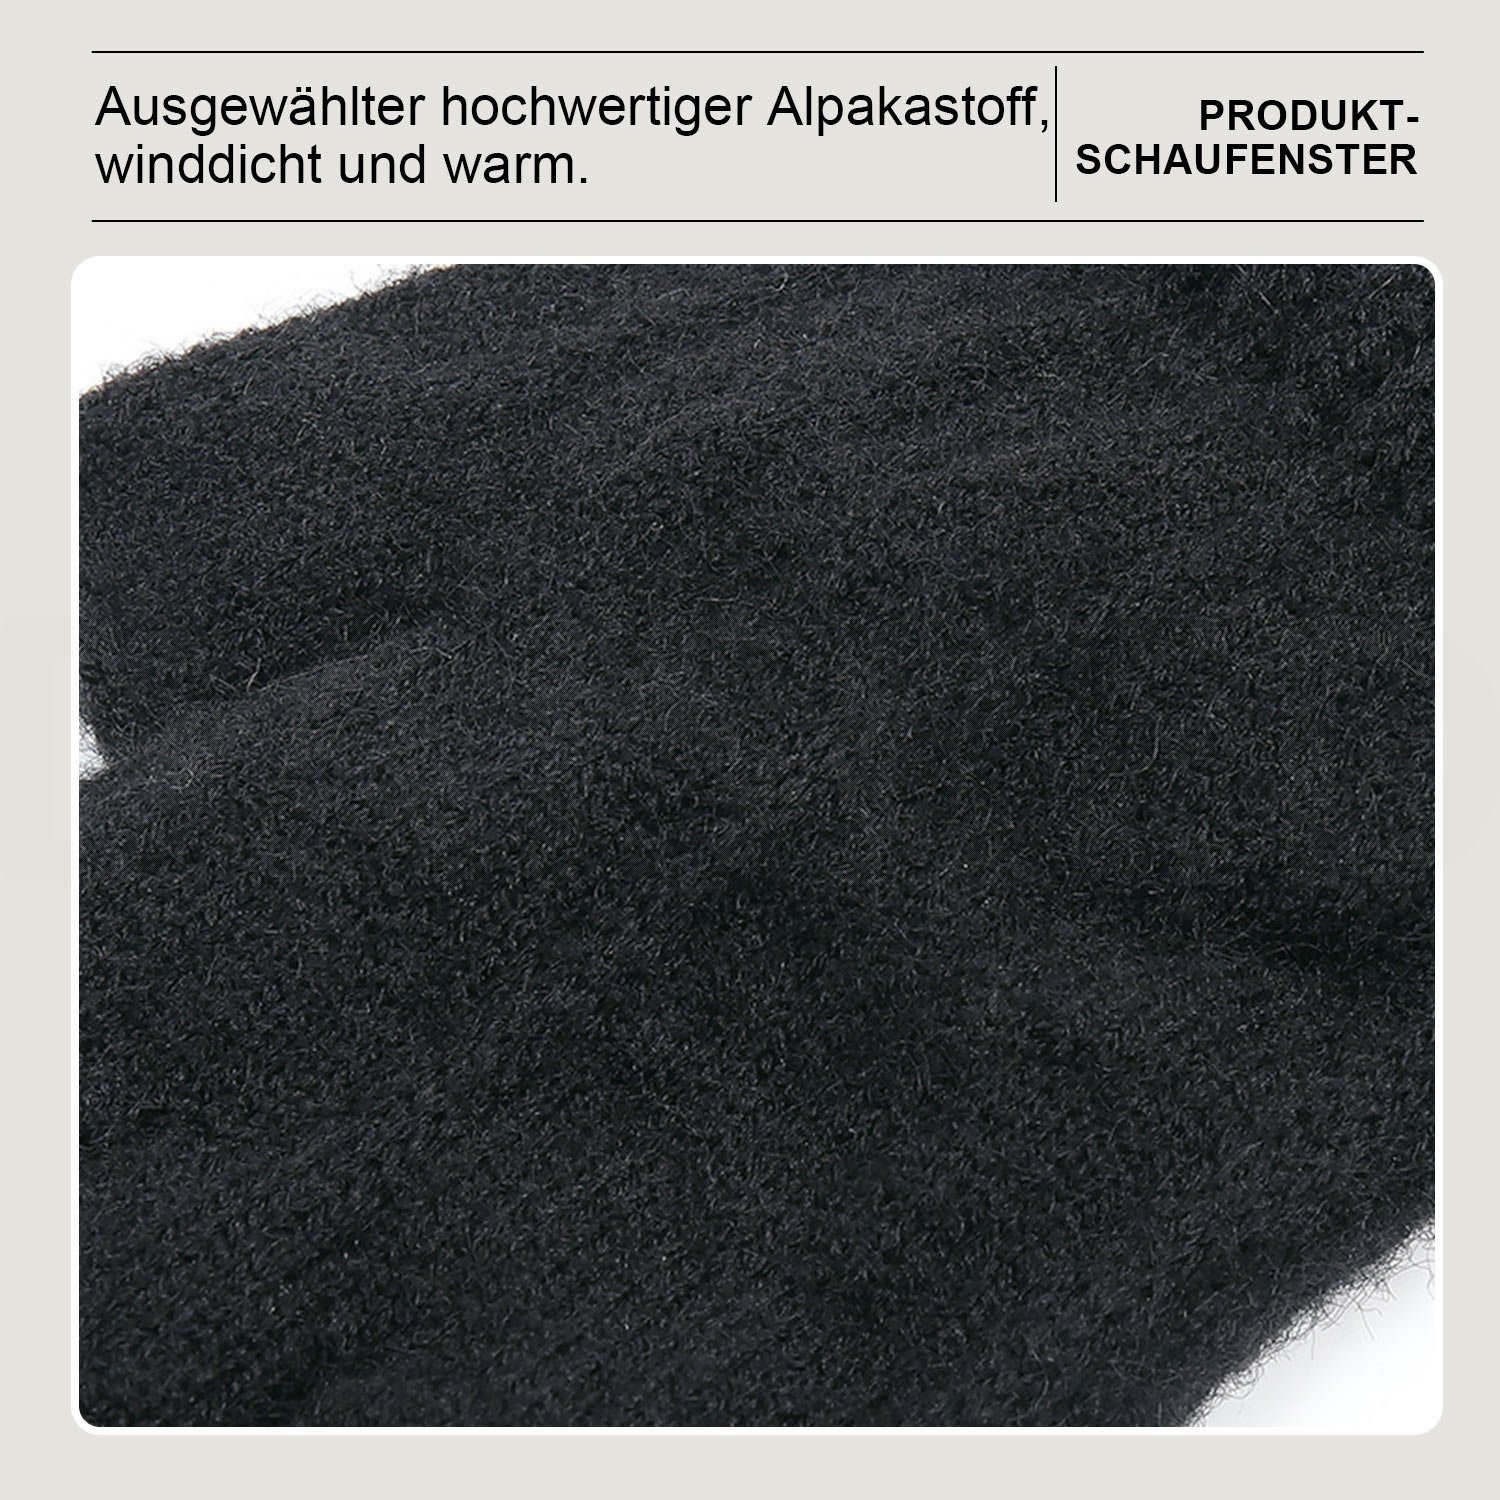 WinterhandschuheTouchscreen Damen Daisred 2 Strickhandschuhe Paar Schwarz+Grau Warm Handschuhe